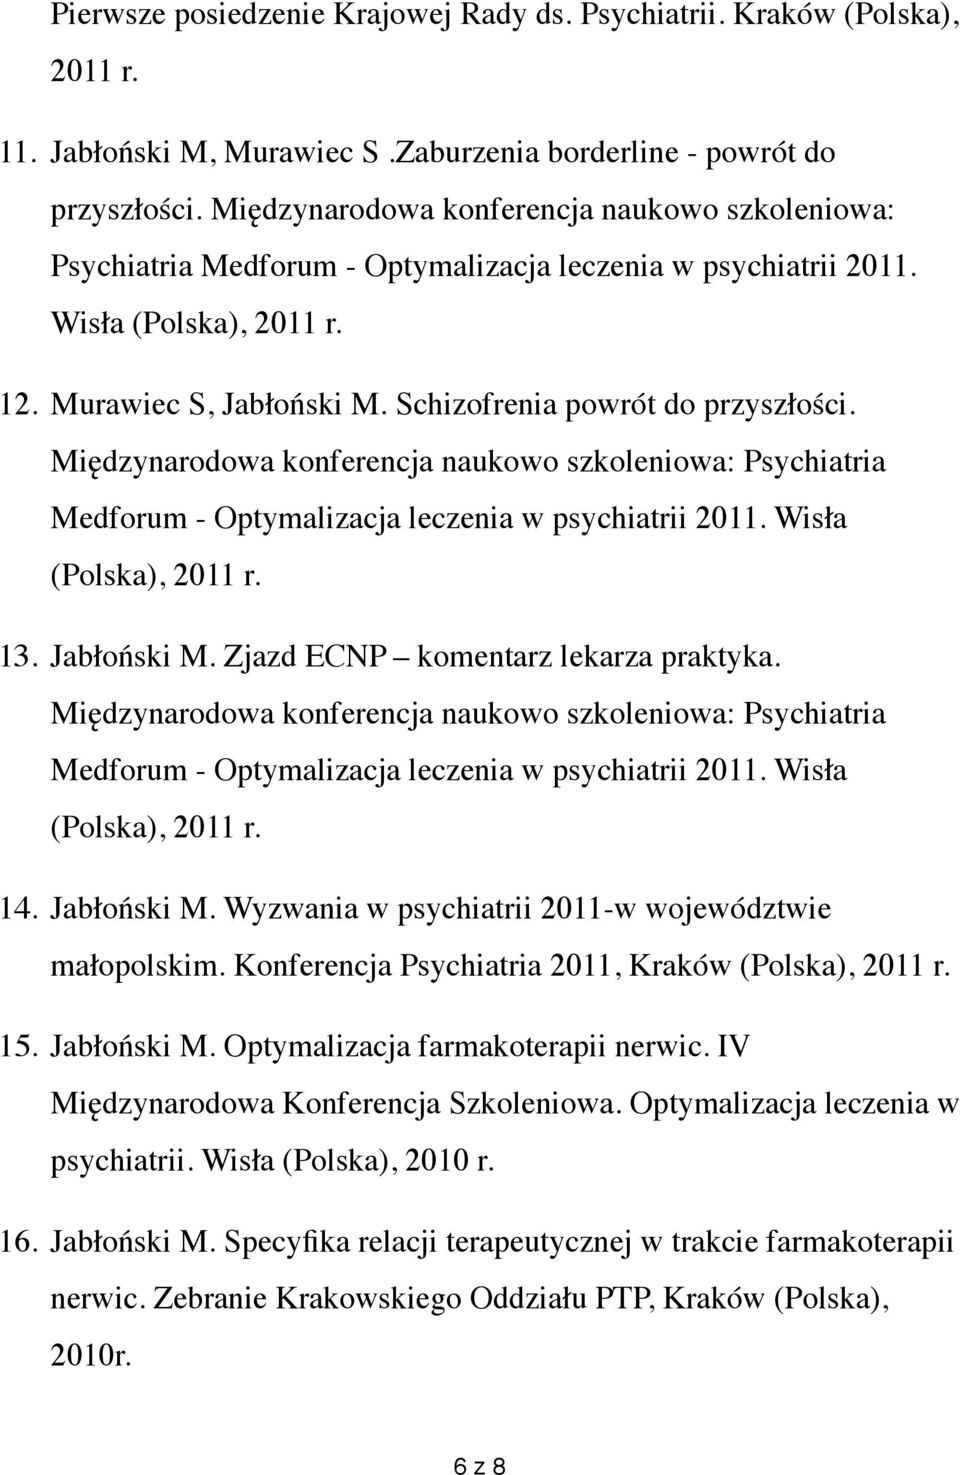 Schizofrenia powrót do przyszłości. Międzynarodowa konferencja naukowo szkoleniowa: Psychiatria Medforum - Optymalizacja leczenia w psychiatrii 2011. Wisła (Polska), 2011 r. 13. Jabłoński M.